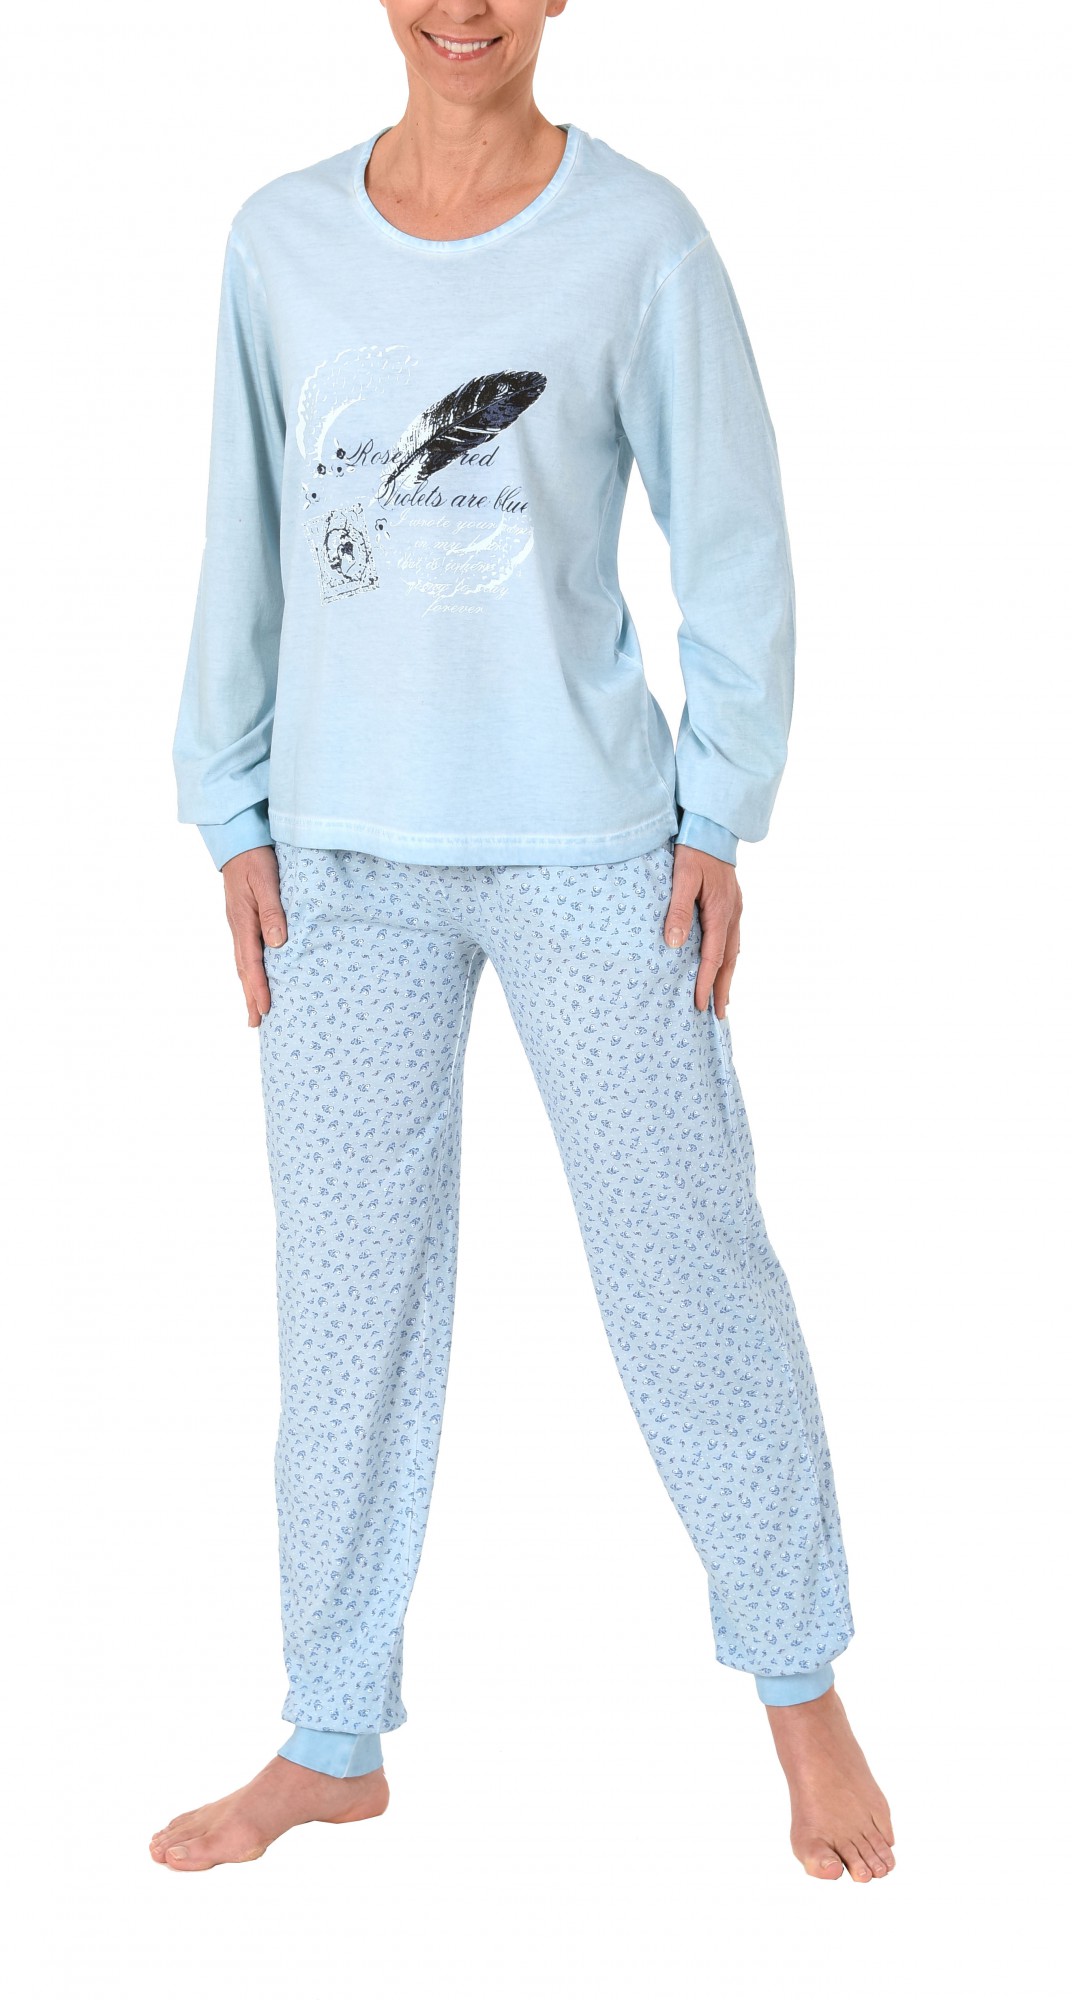 Lässiger Damen Pyjama langarm in gewaschener Optik – 171 201 90 820